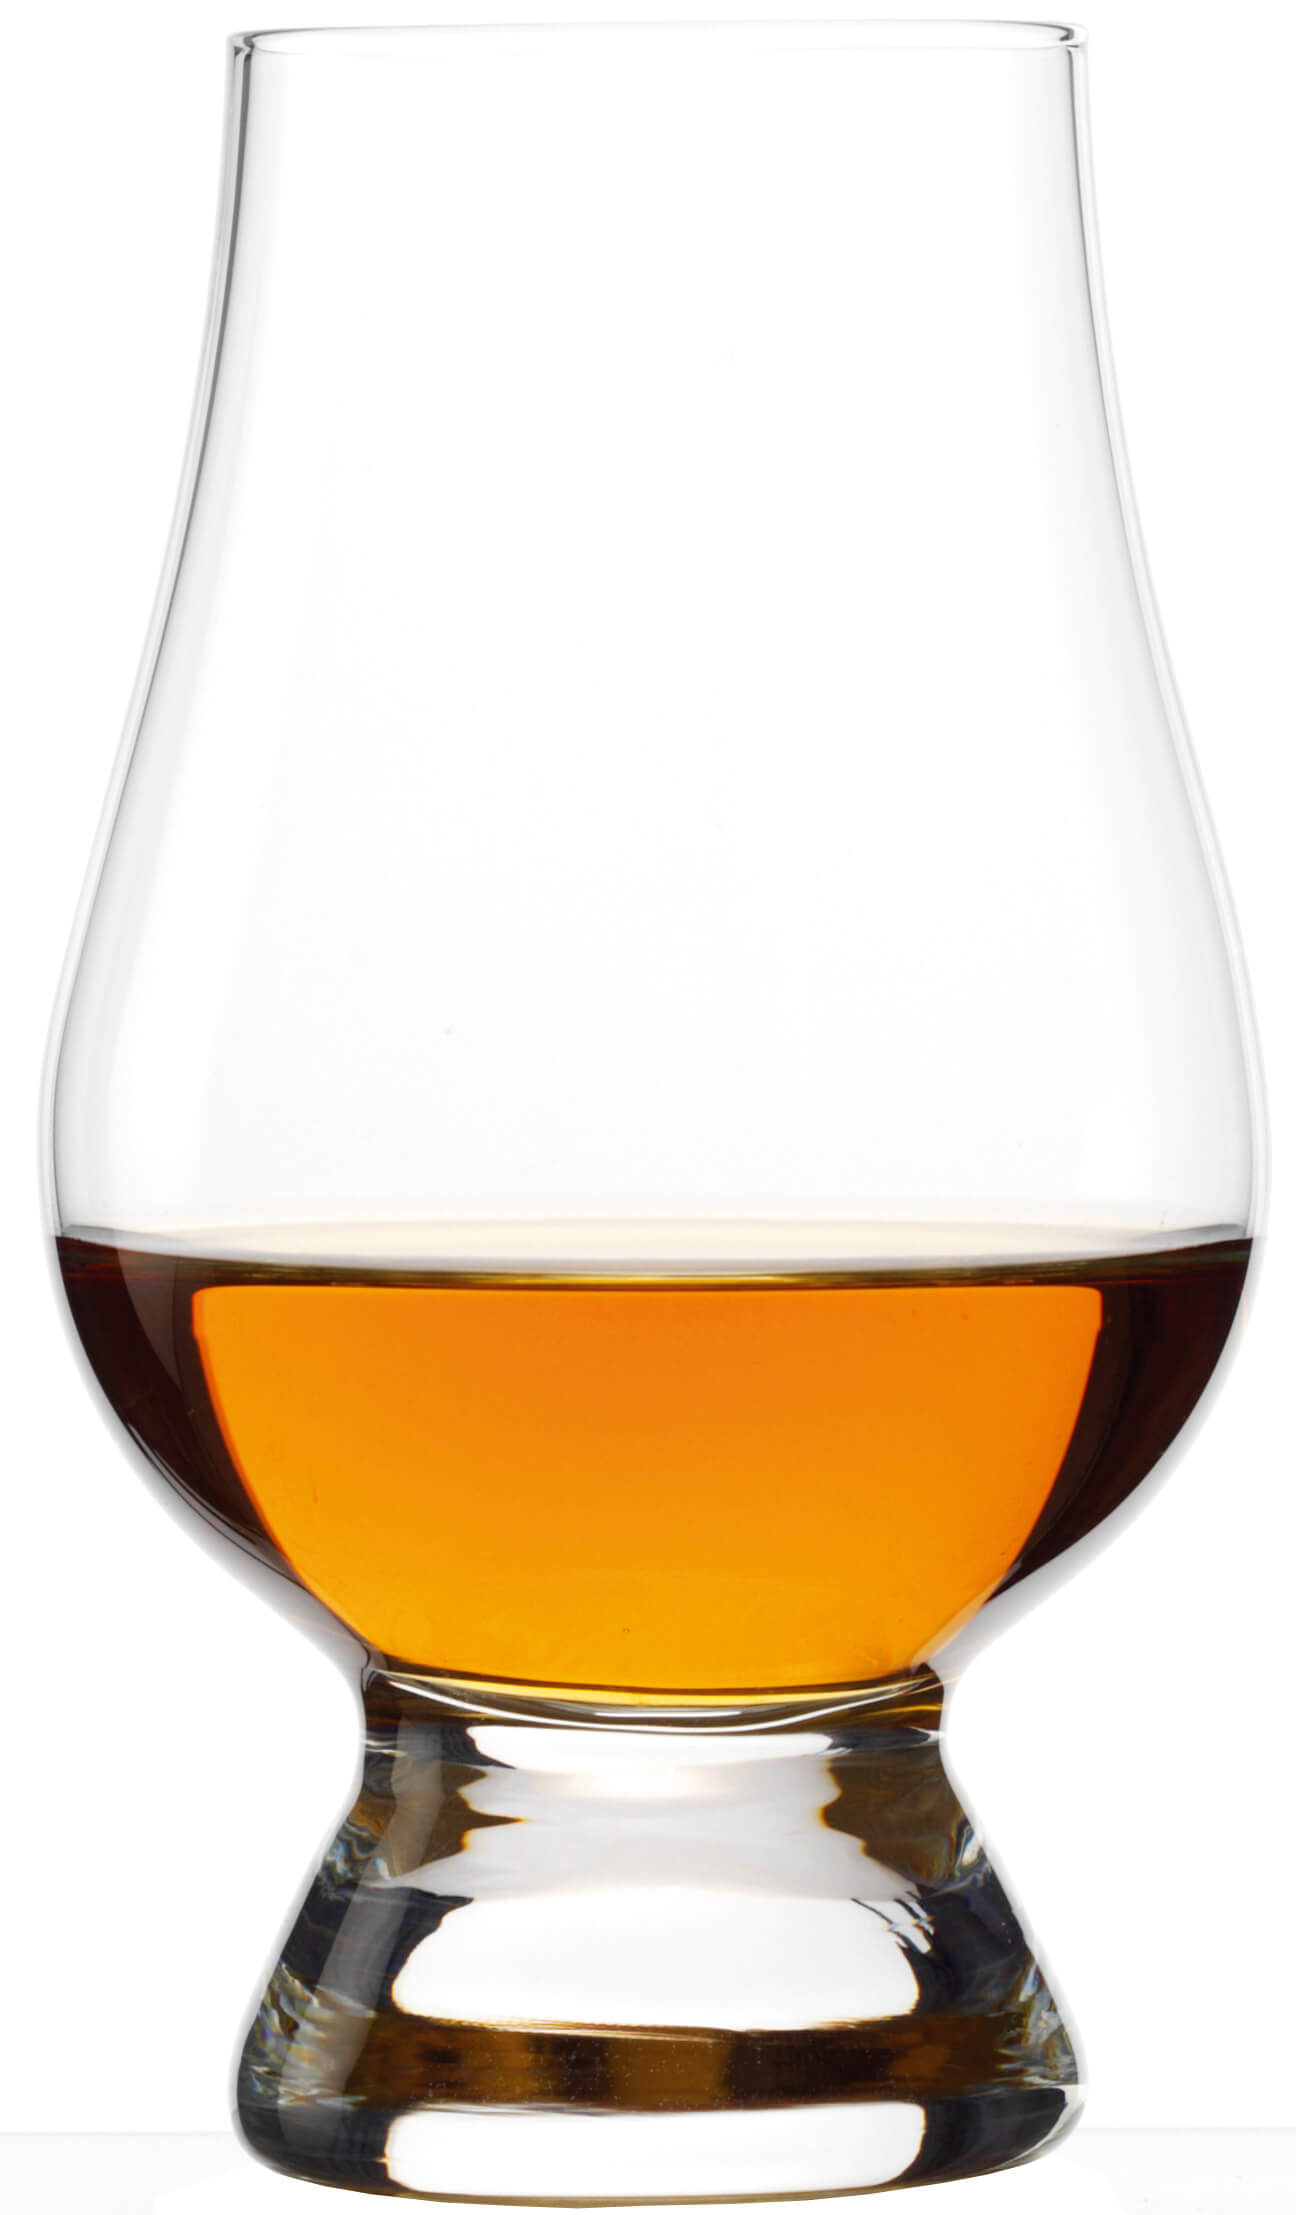 The Glencairn Whisky tasting set with three glasses